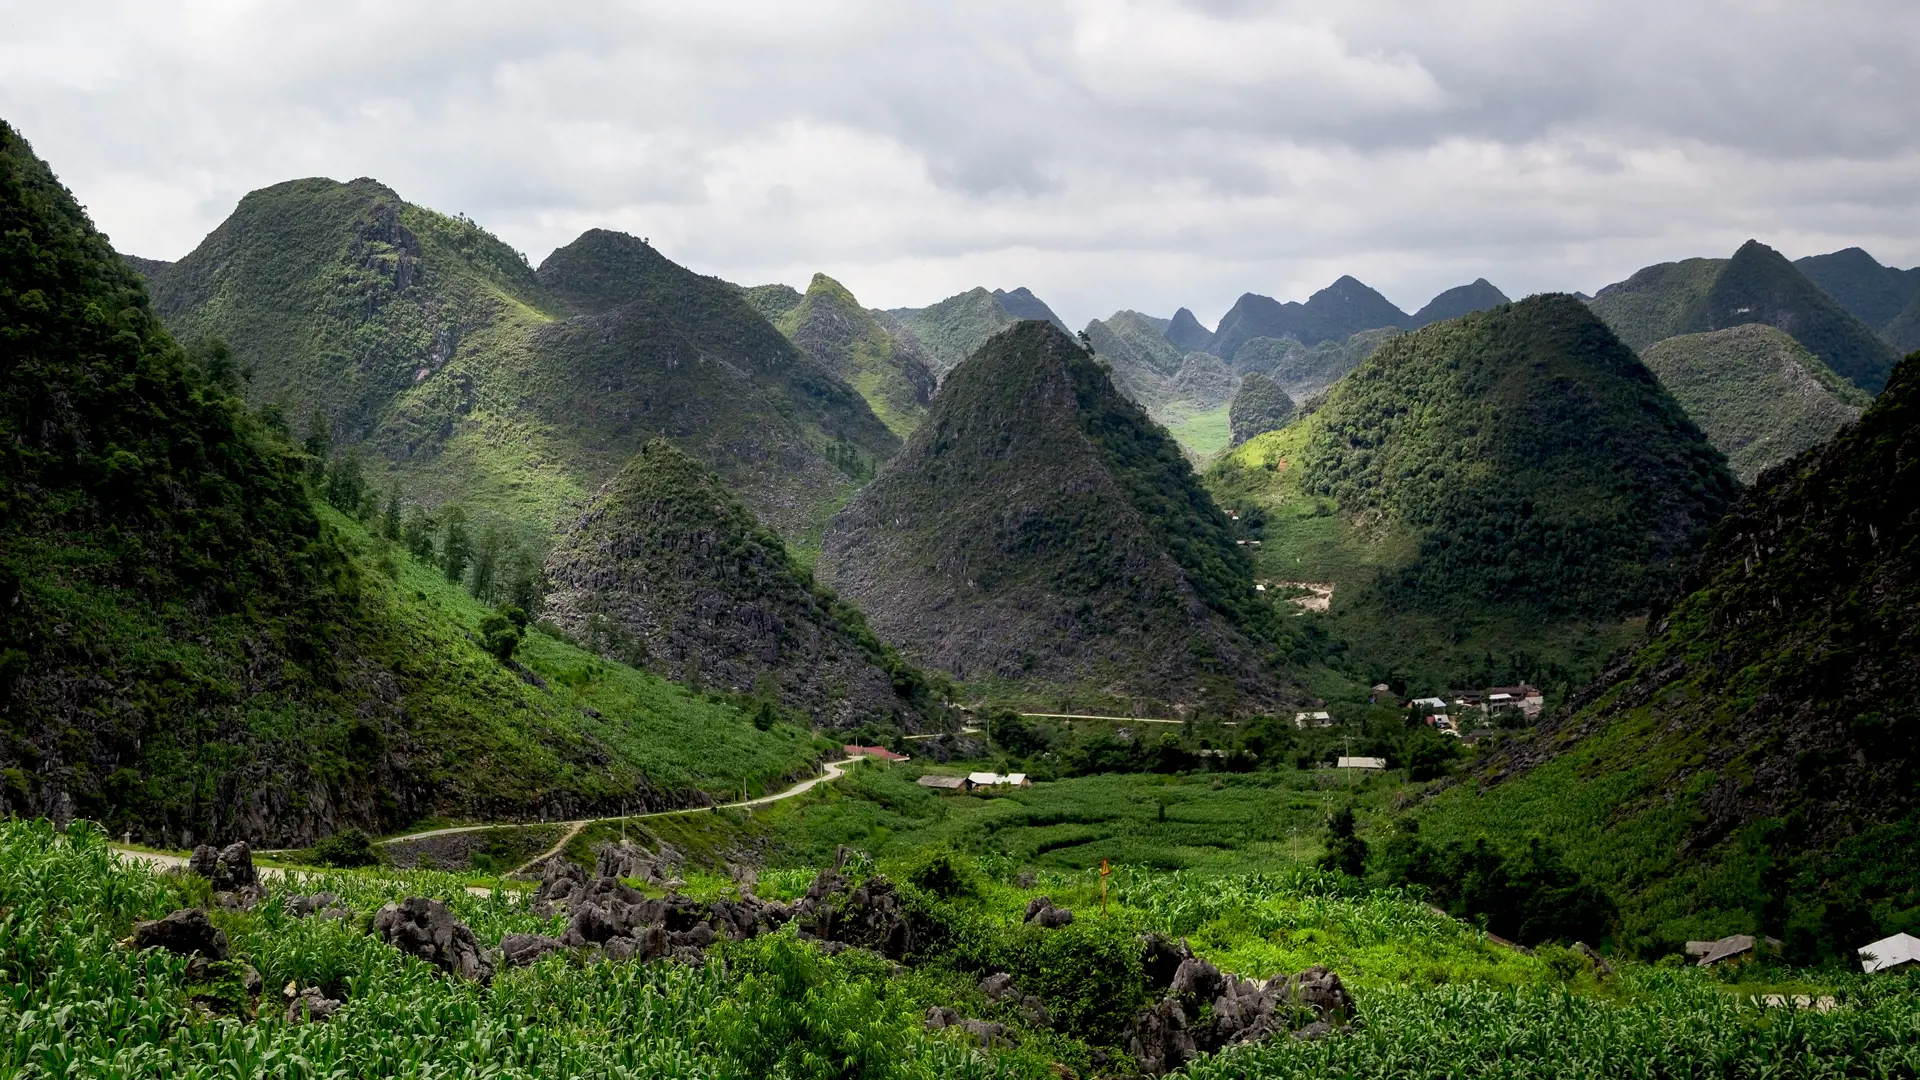 EVENTYRLIGT LANDSKAB - Er nok de to ord, der bedst beskriver bjerglandskabet i Ha Giang-provinsen. Men virkeligheden overgår ethvert foto, Check Point Travel